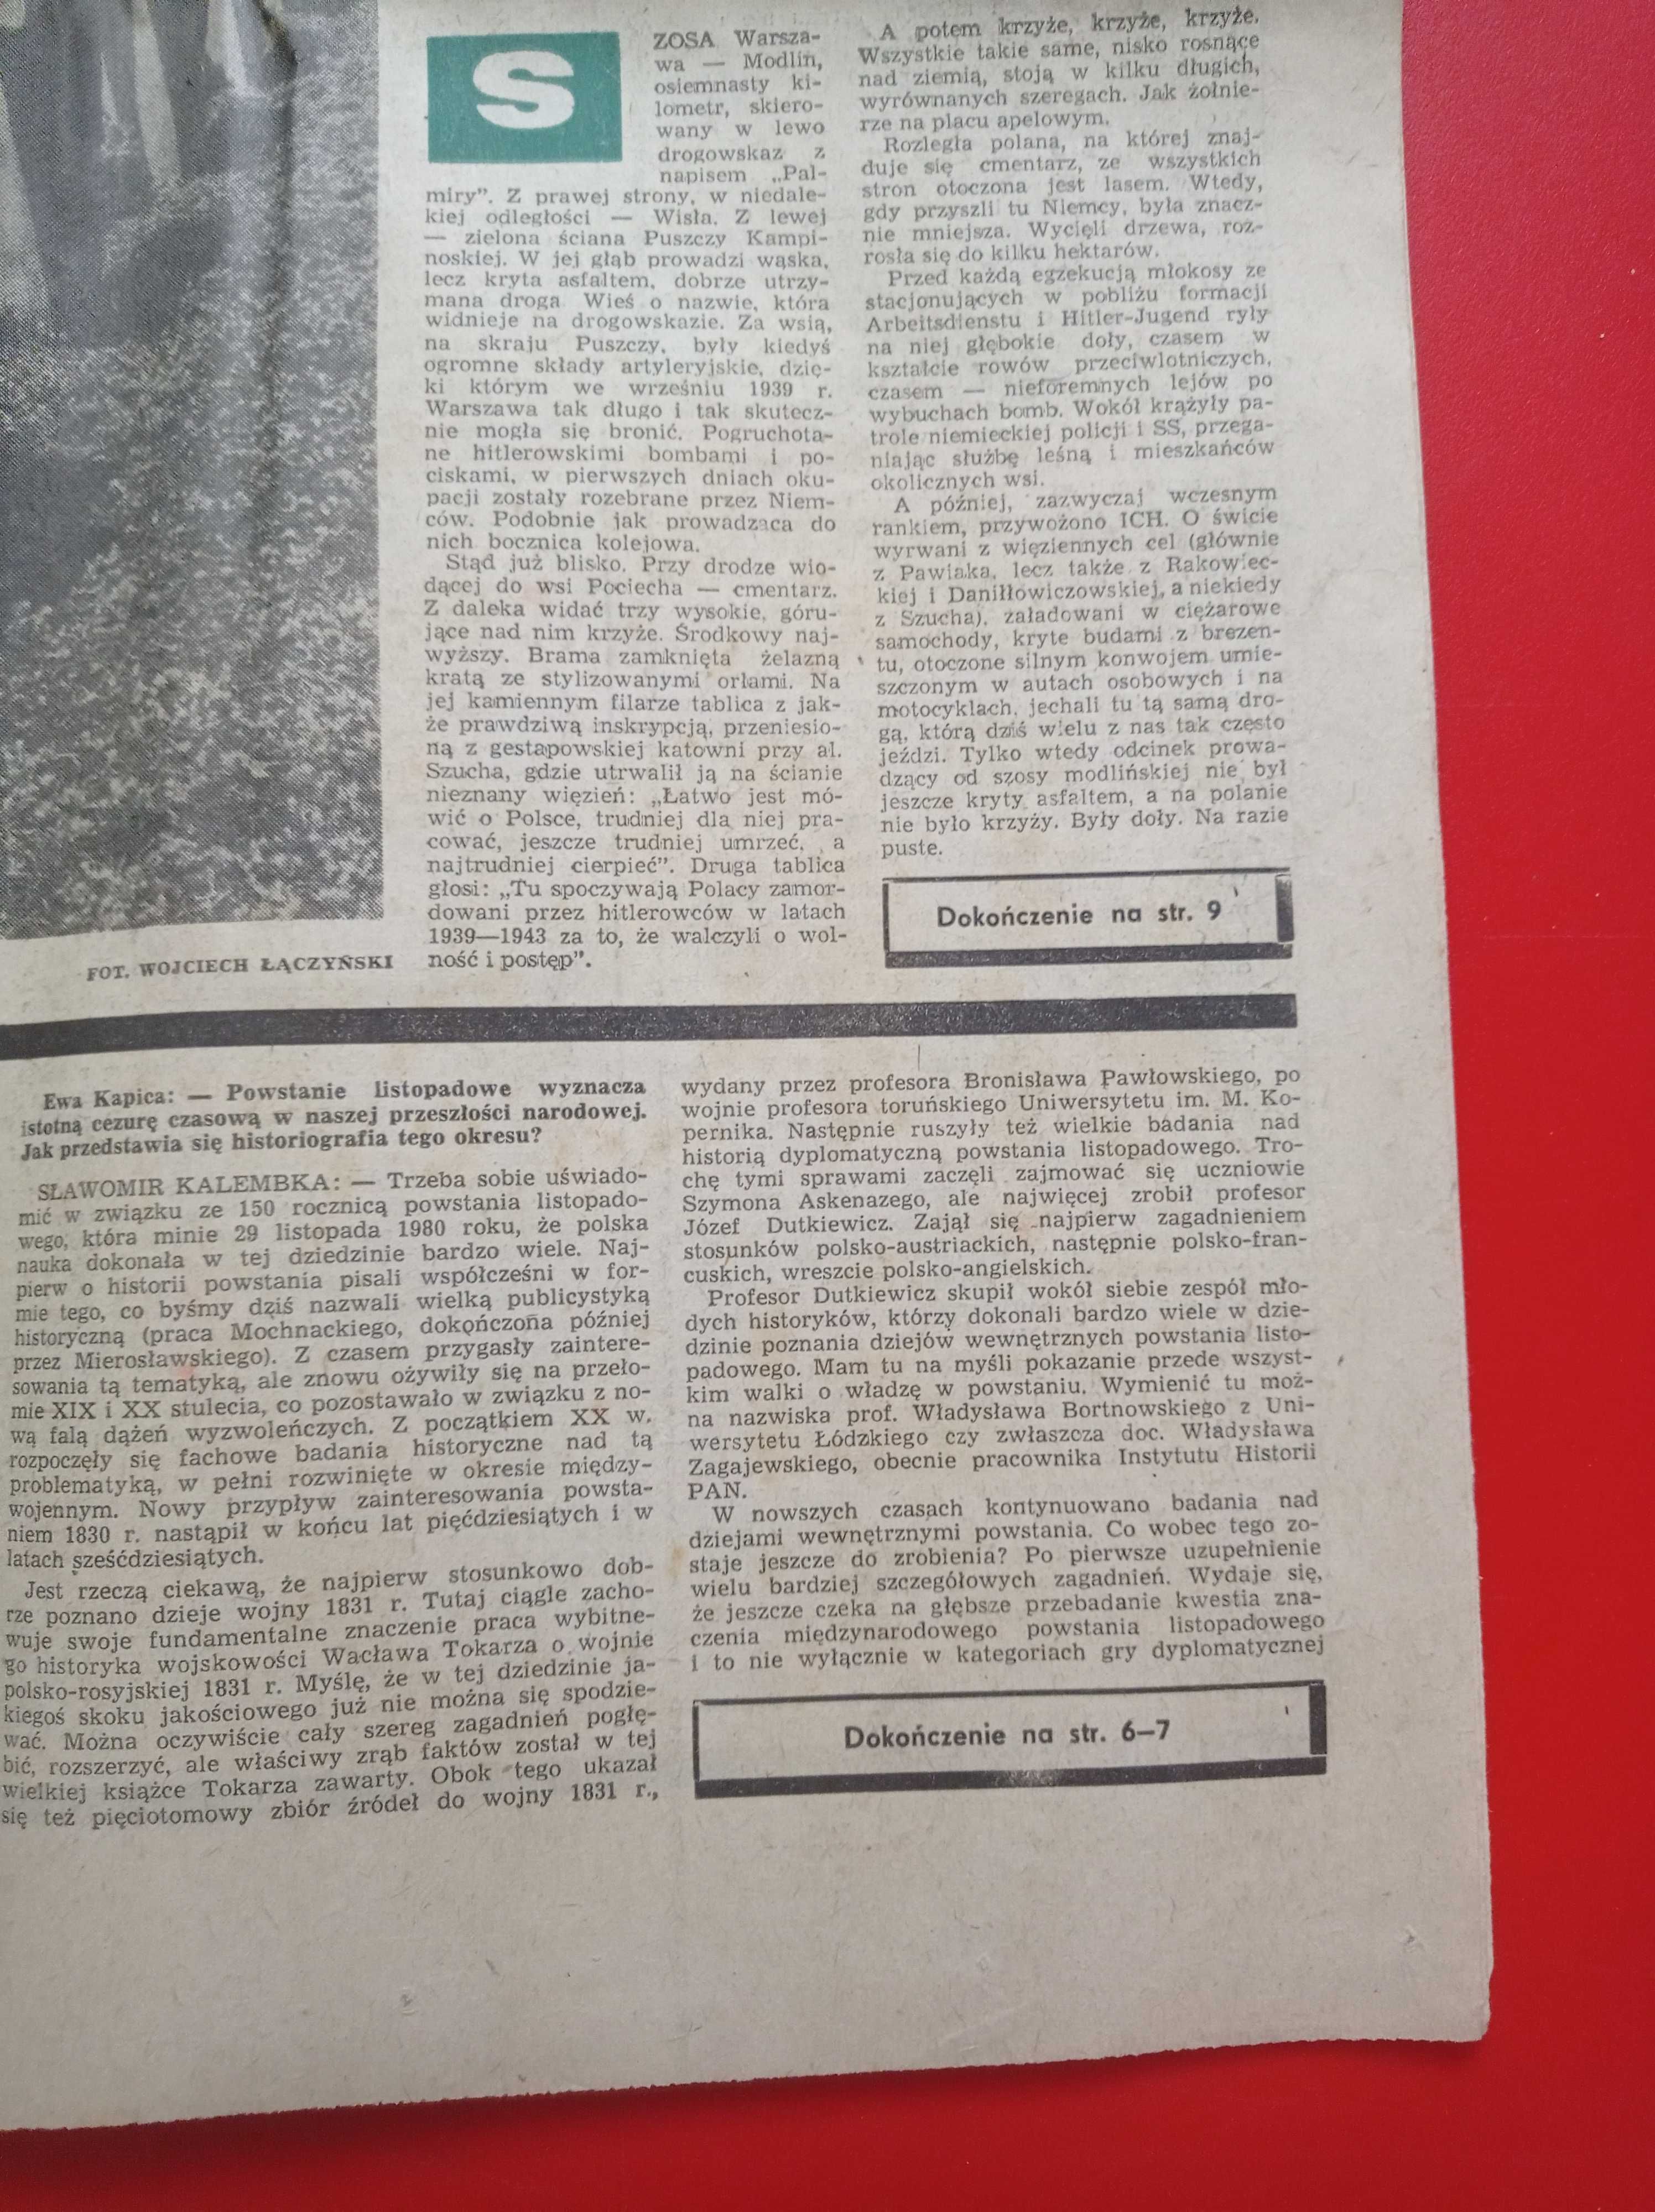 Kierunki tygodnik nr 25 / 1980; 22 czerwca 1980